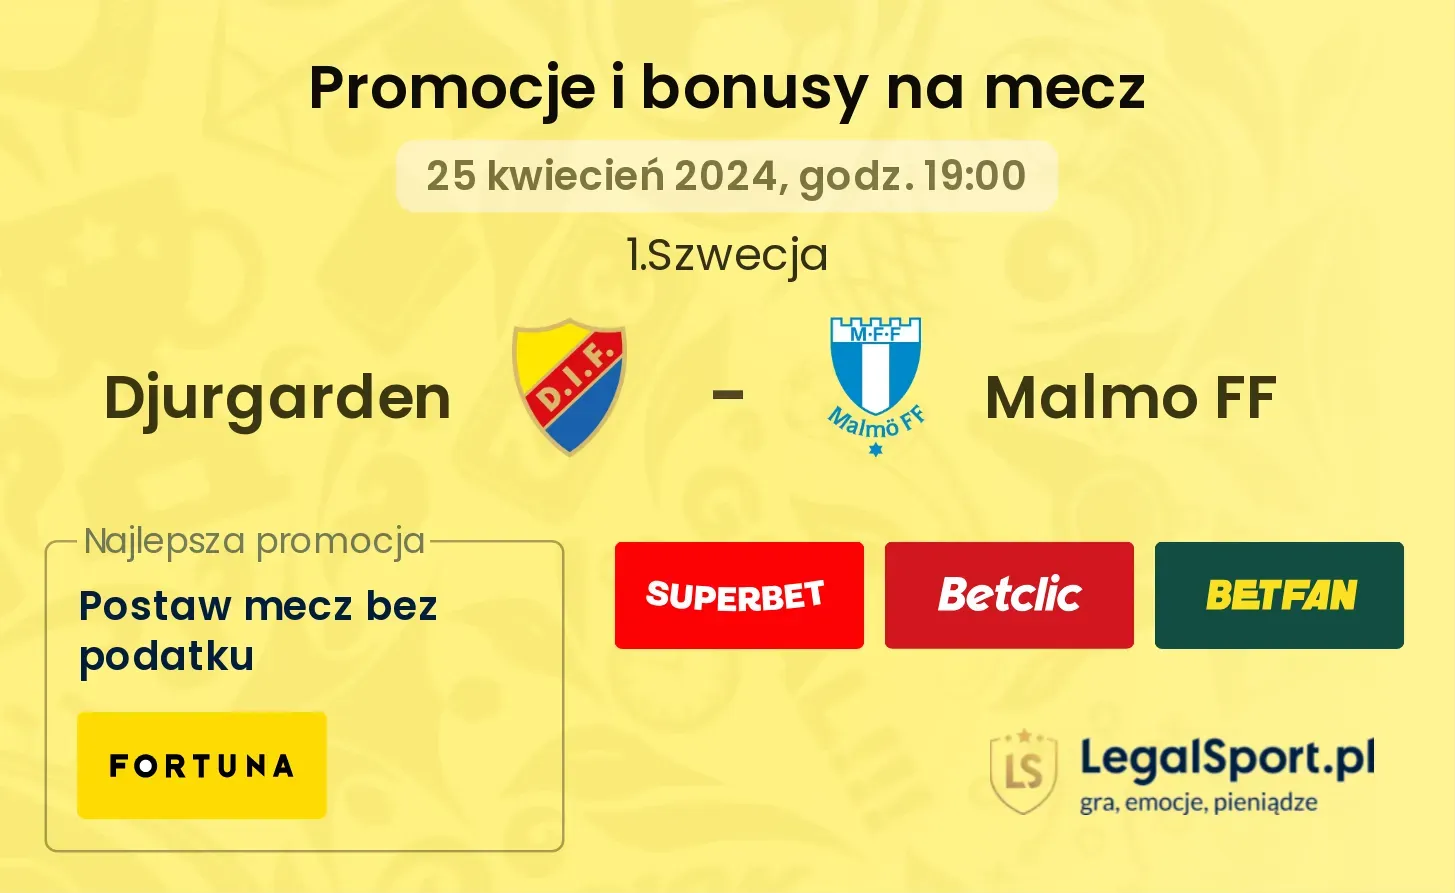 Djurgarden - Malmo FF promocje bonusy na mecz